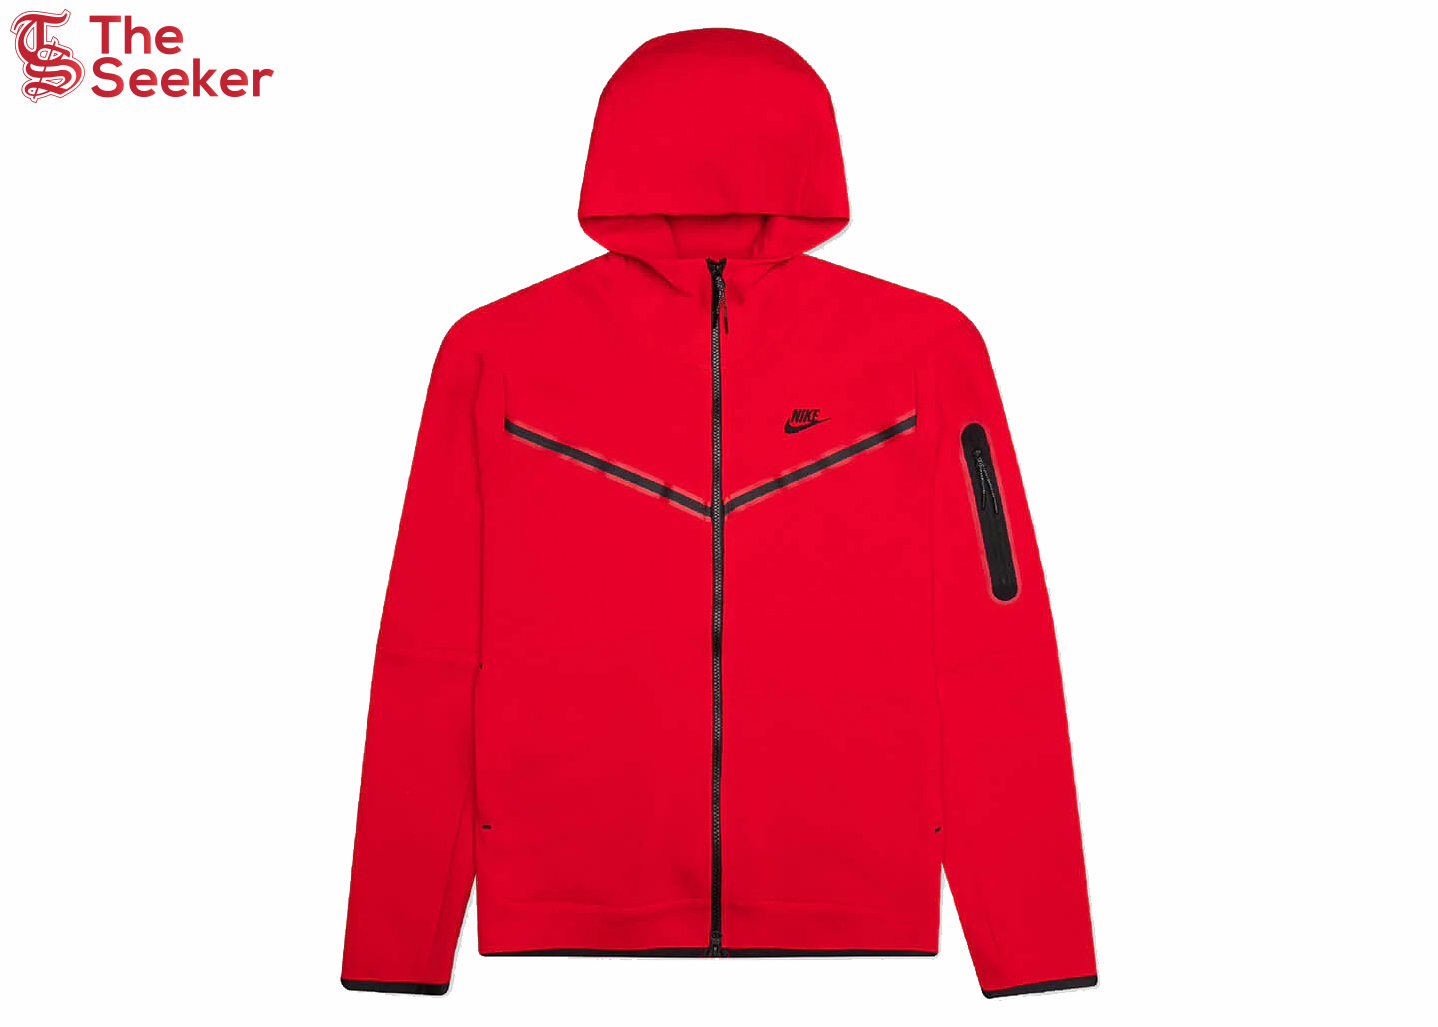 Nike Sportswear Kids' Tech Fleece Full-Zip Hoodie University Red/Black